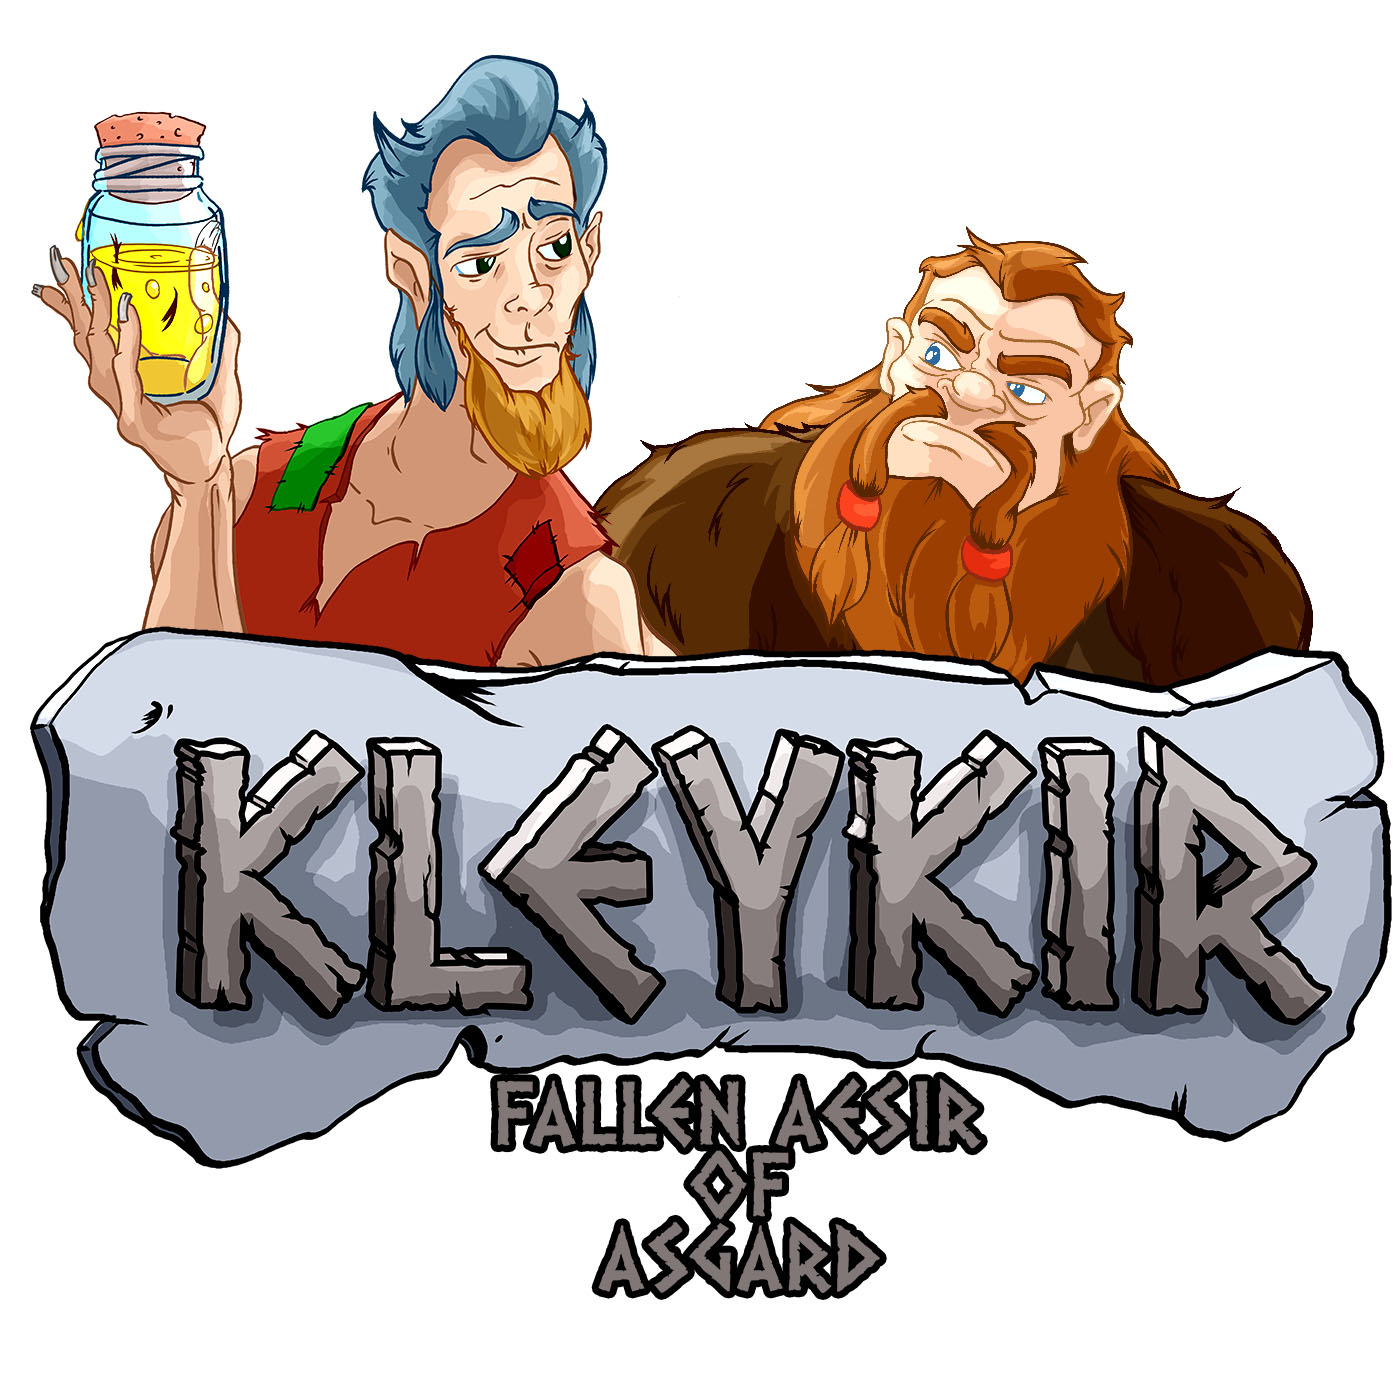 Kleykir, Fallen Aesir of Asgard: Episode 1, That Loki Bastard